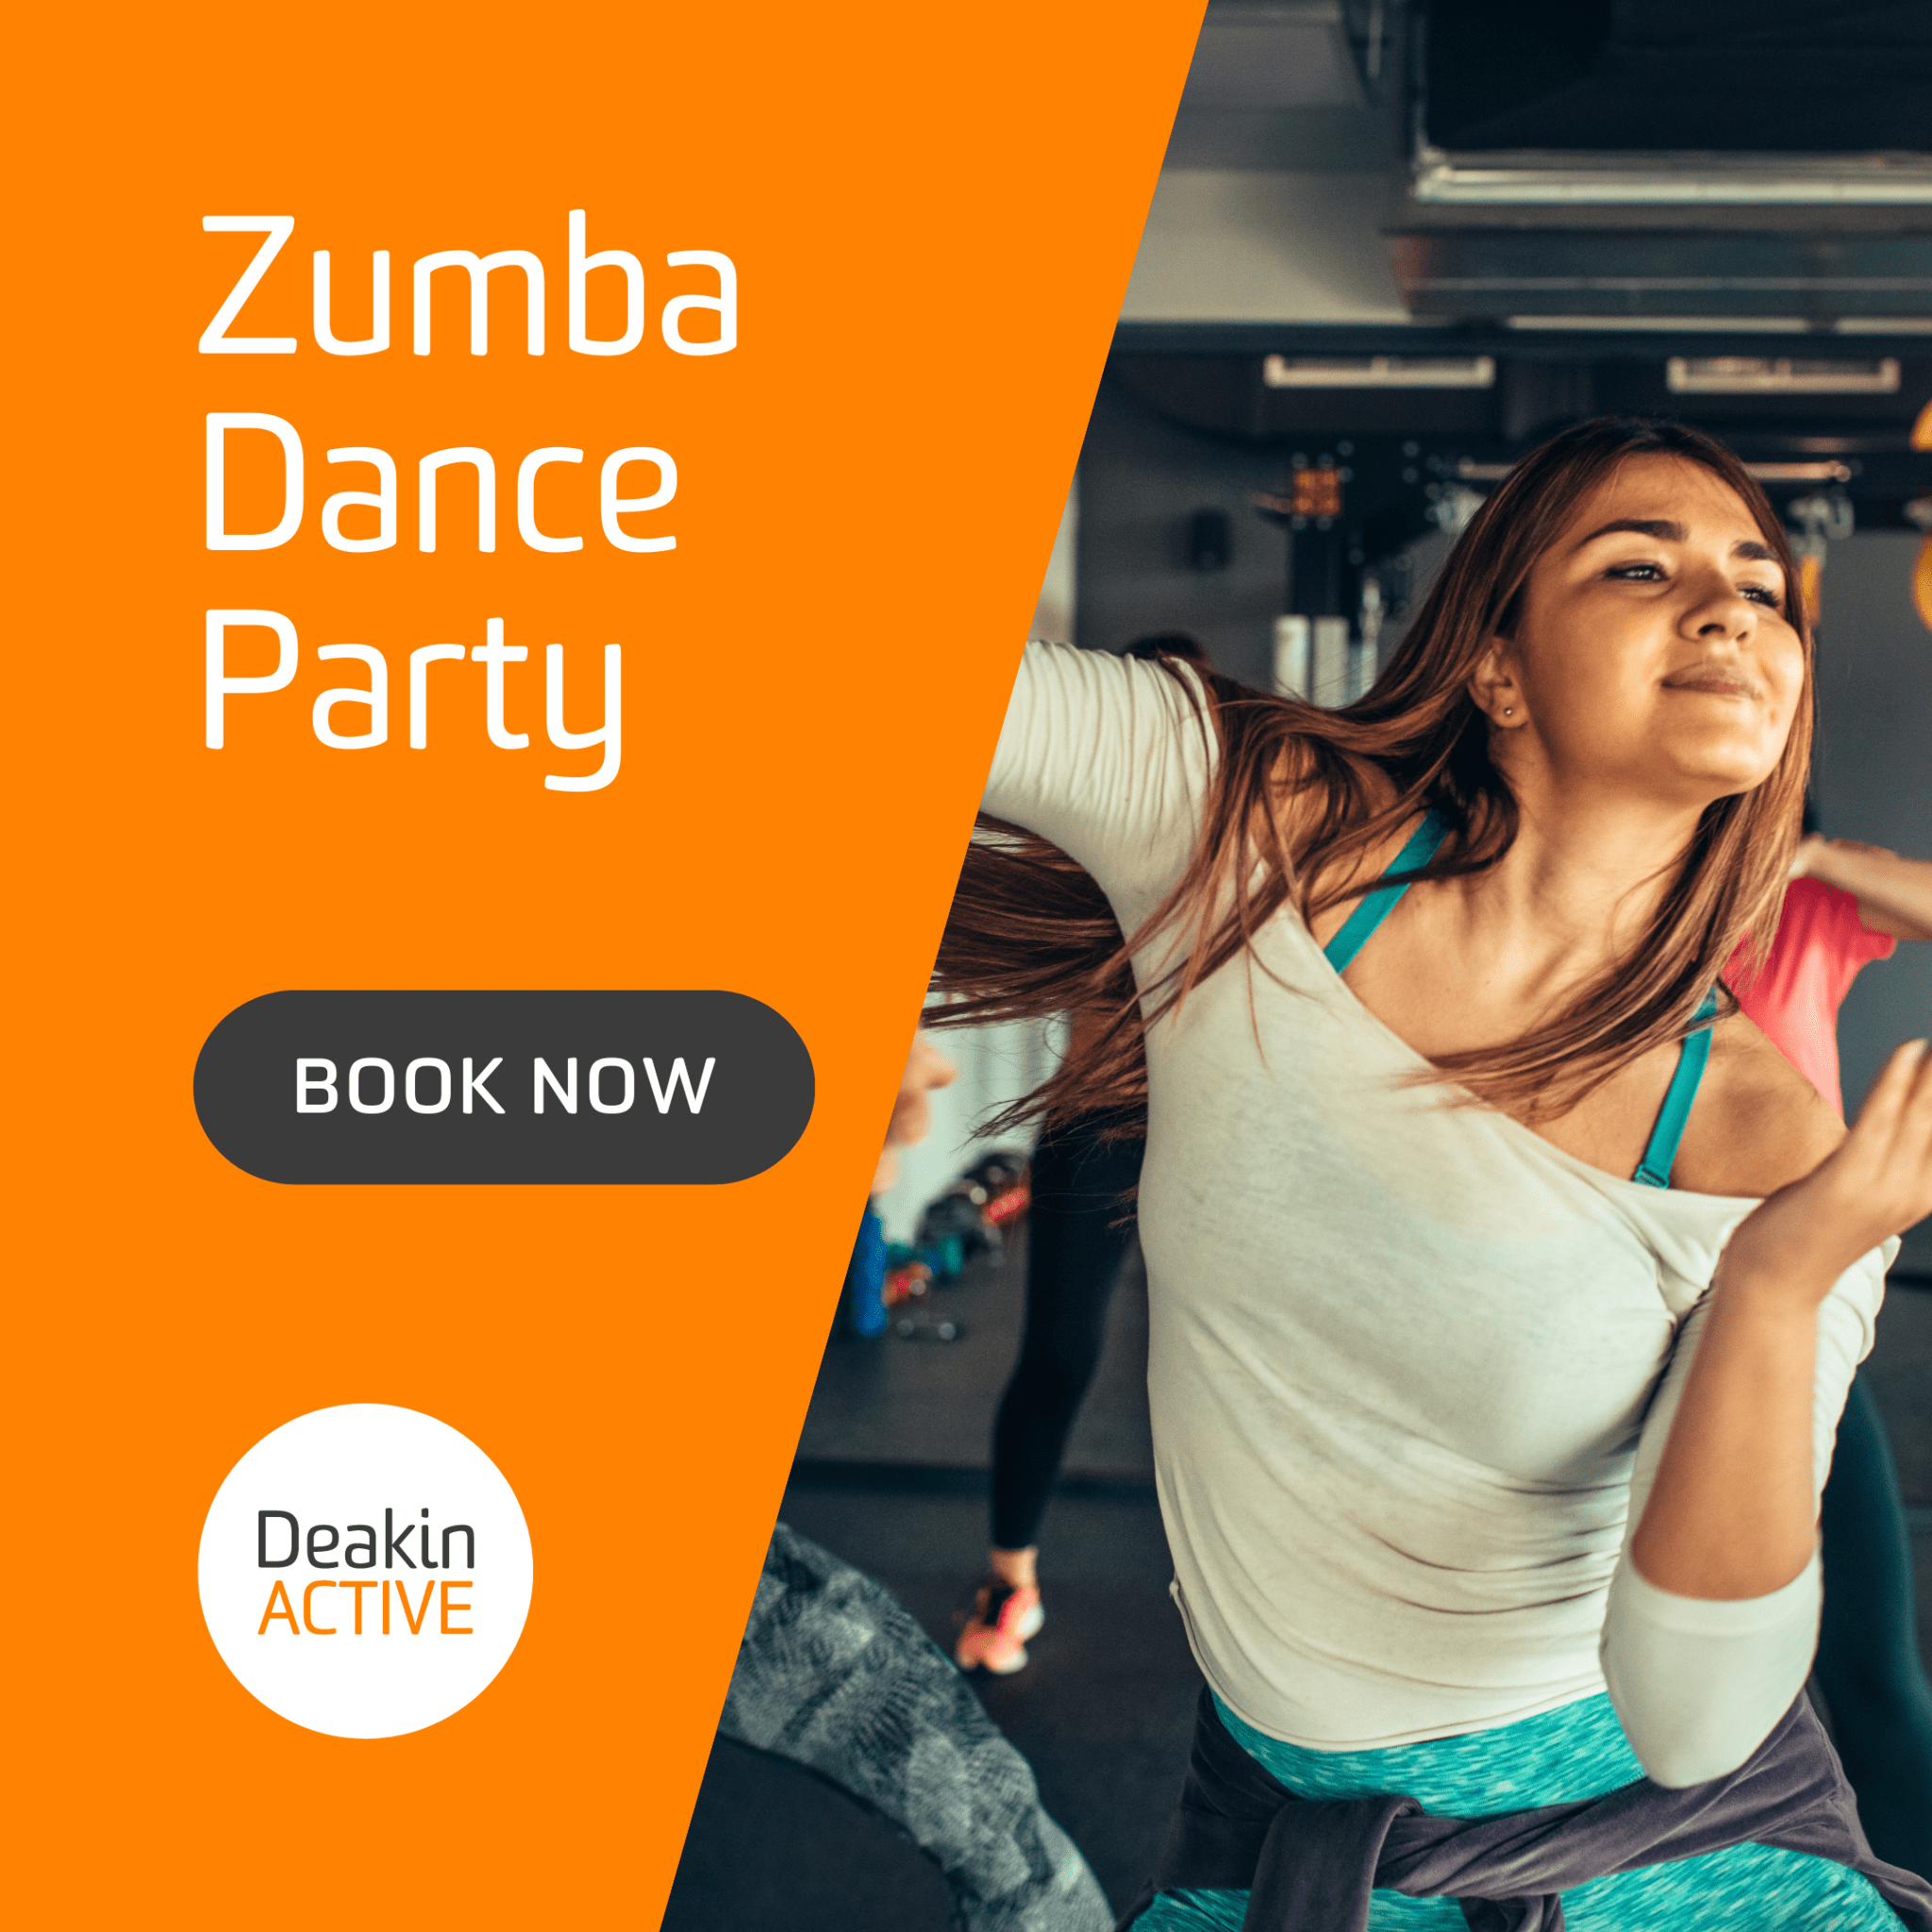 Zumba Dance Party at Deakin Active! November 1st - DeakinACTIVE